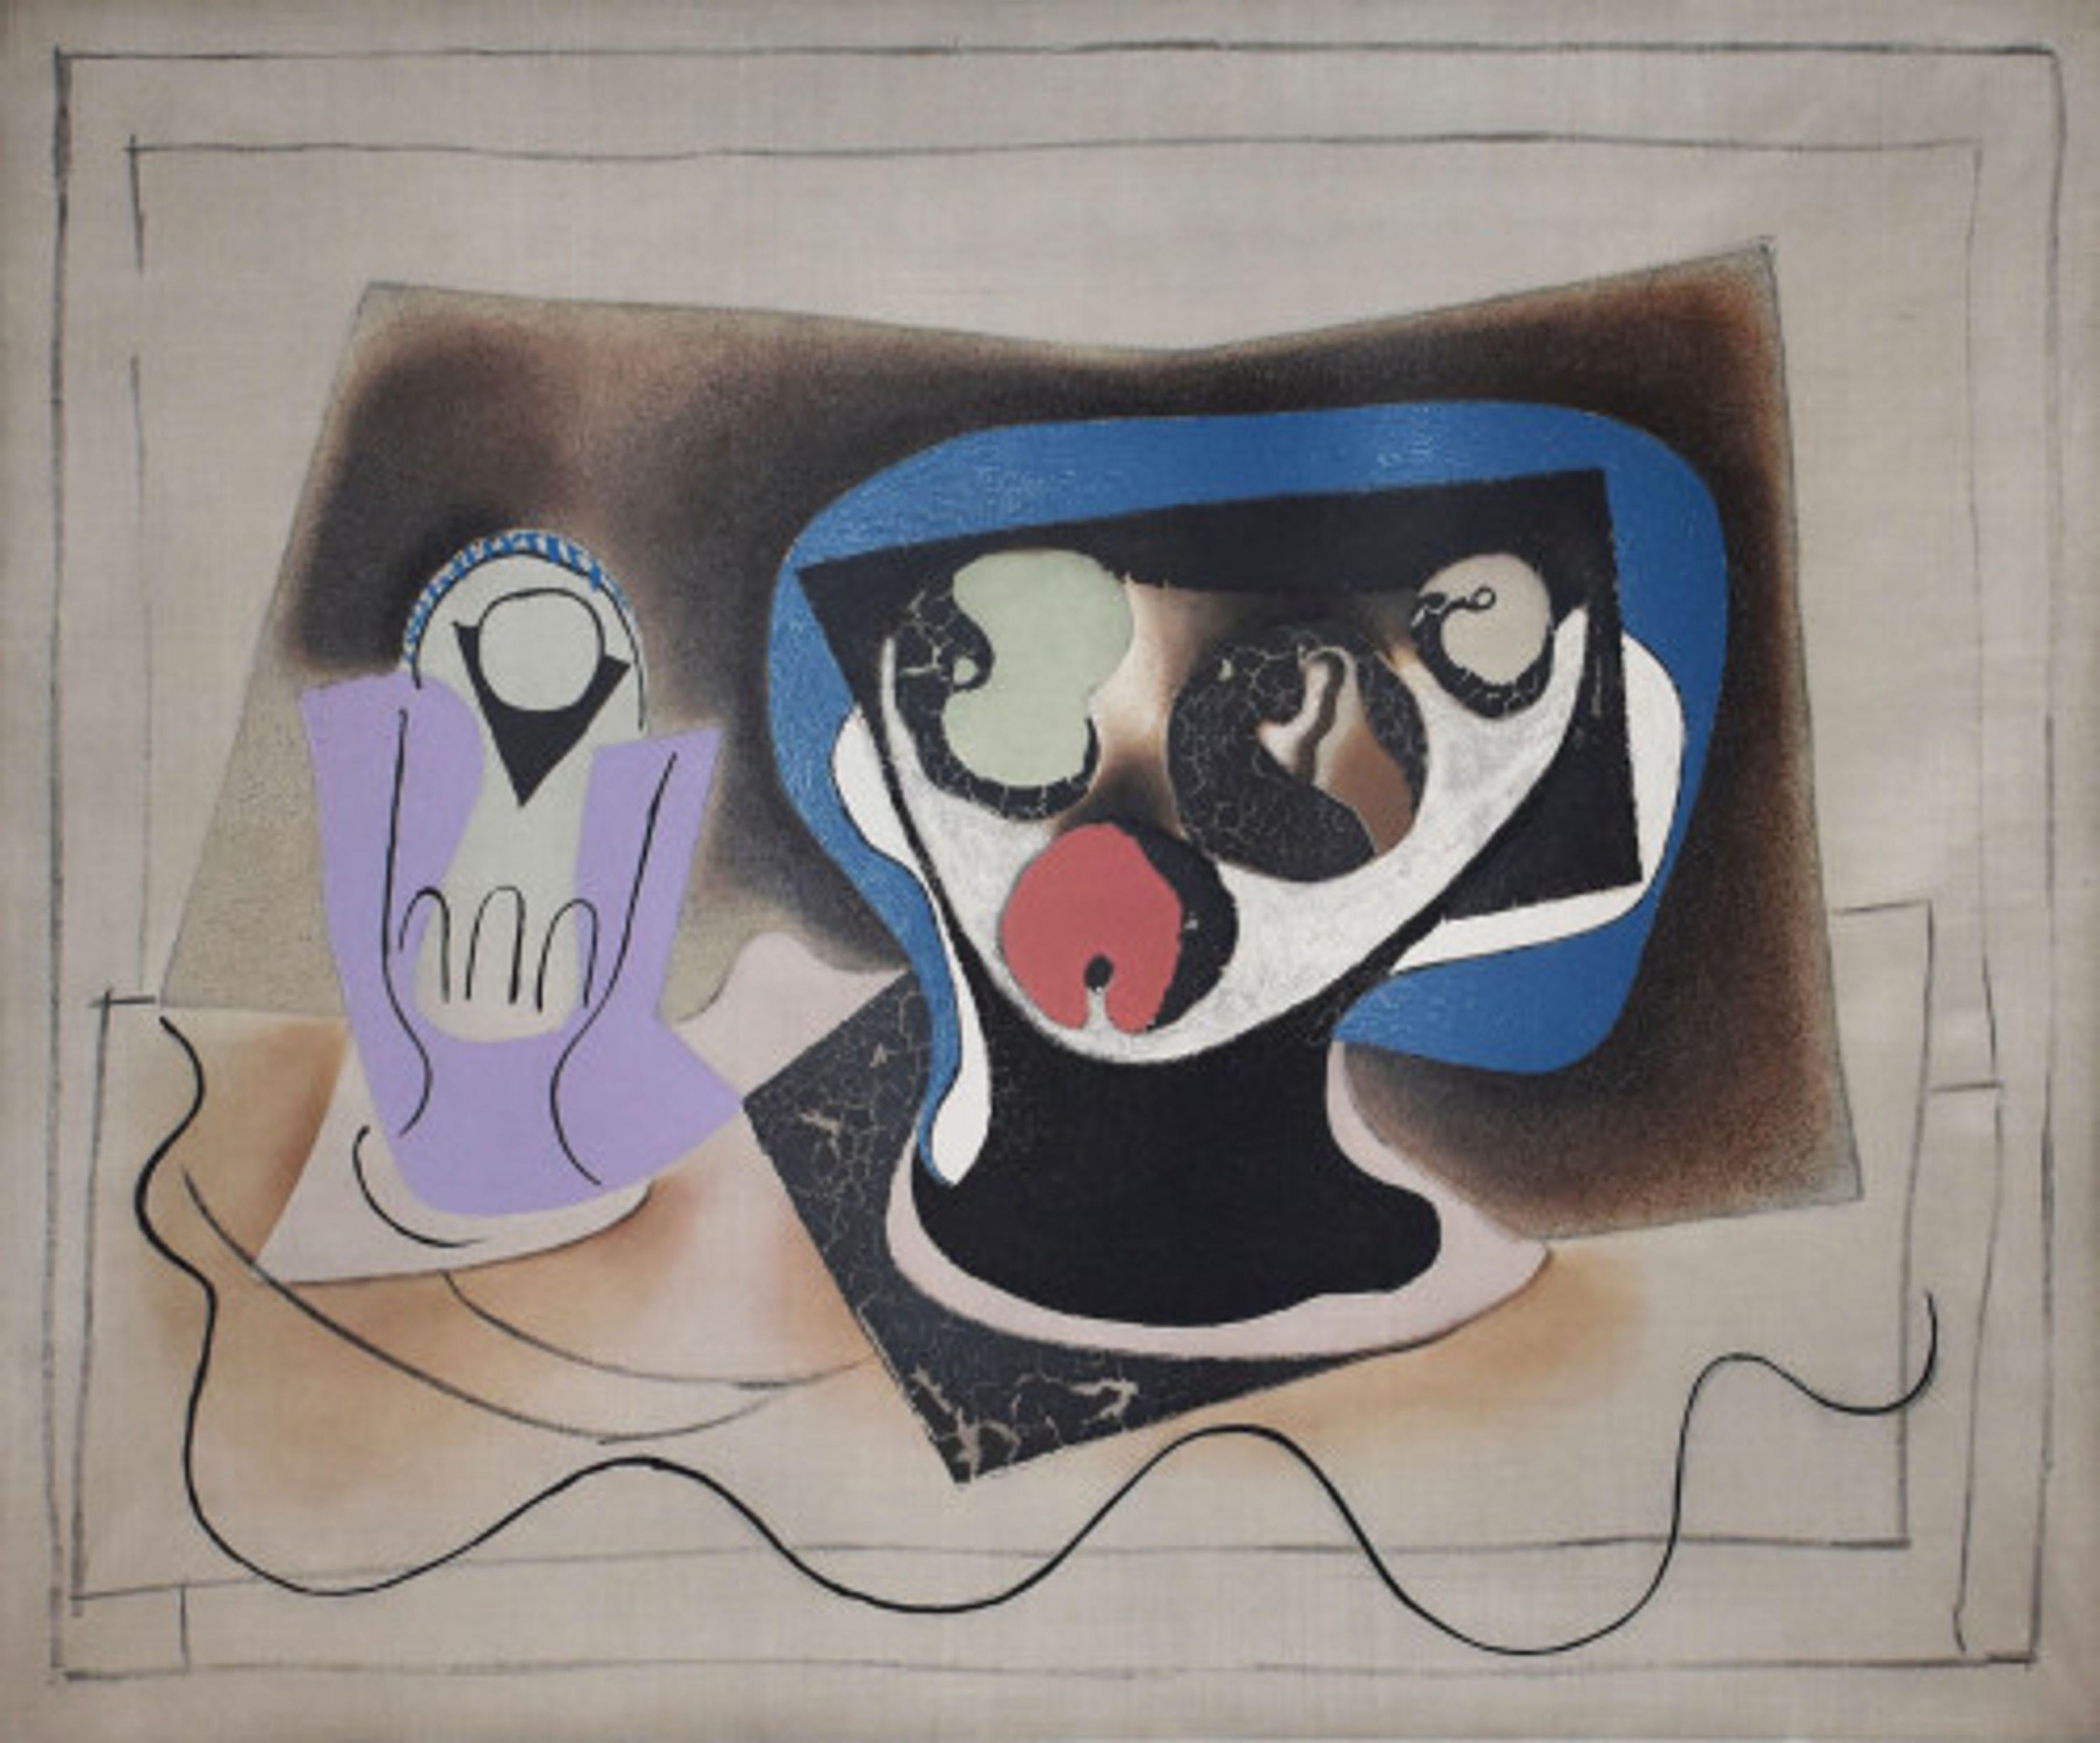 Le verre d' Absinthe - Print by Pablo Picasso